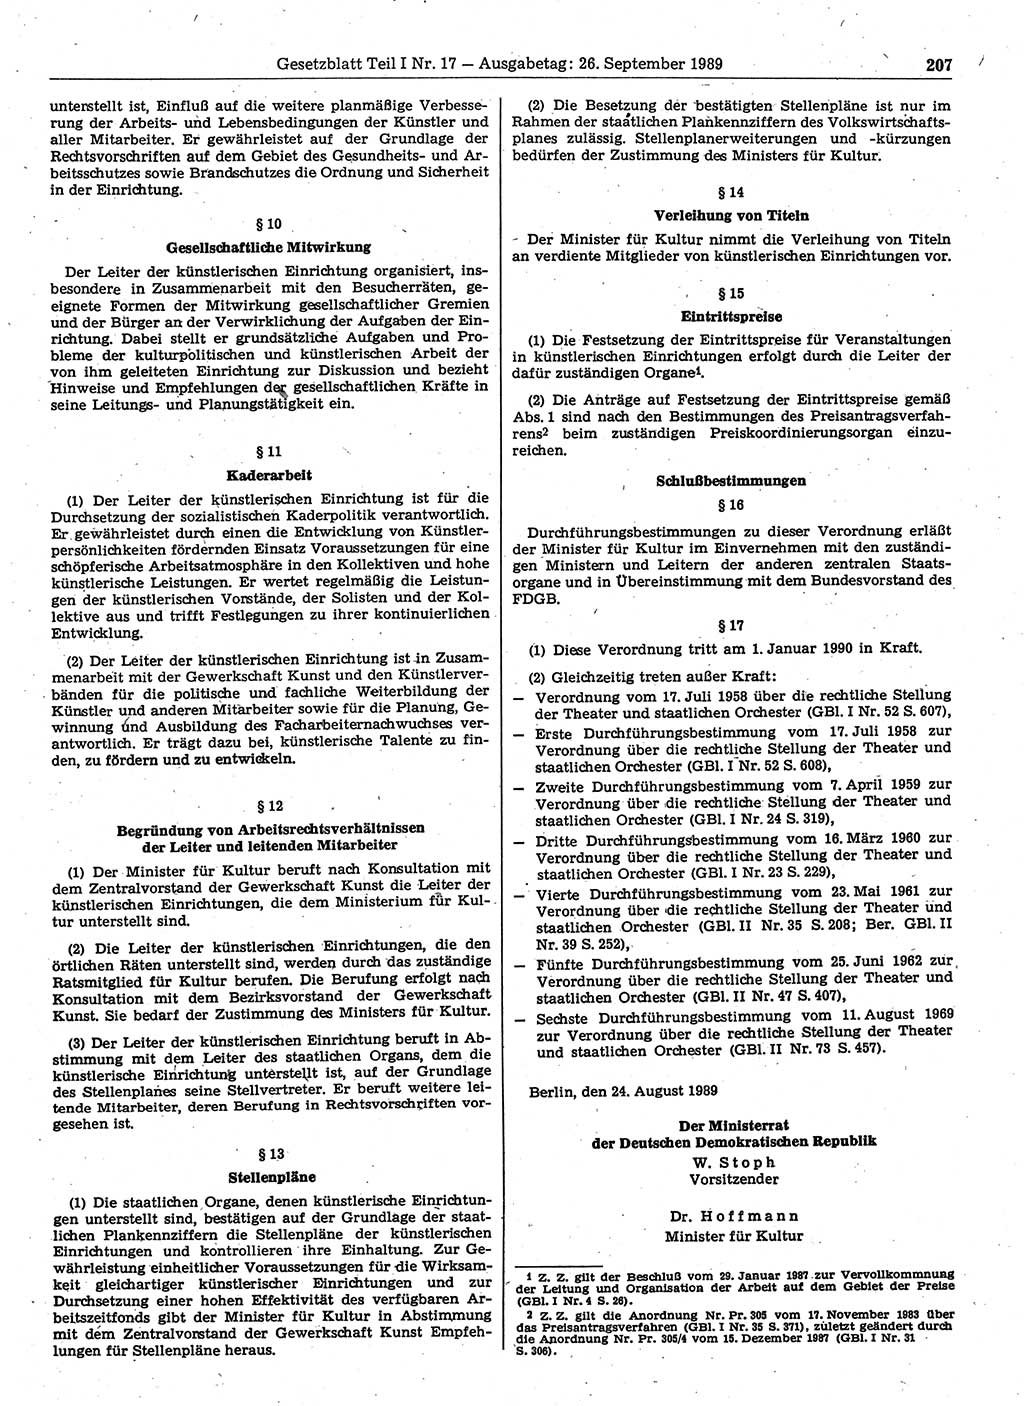 Gesetzblatt (GBl.) der Deutschen Demokratischen Republik (DDR) Teil Ⅰ 1989, Seite 207 (GBl. DDR Ⅰ 1989, S. 207)